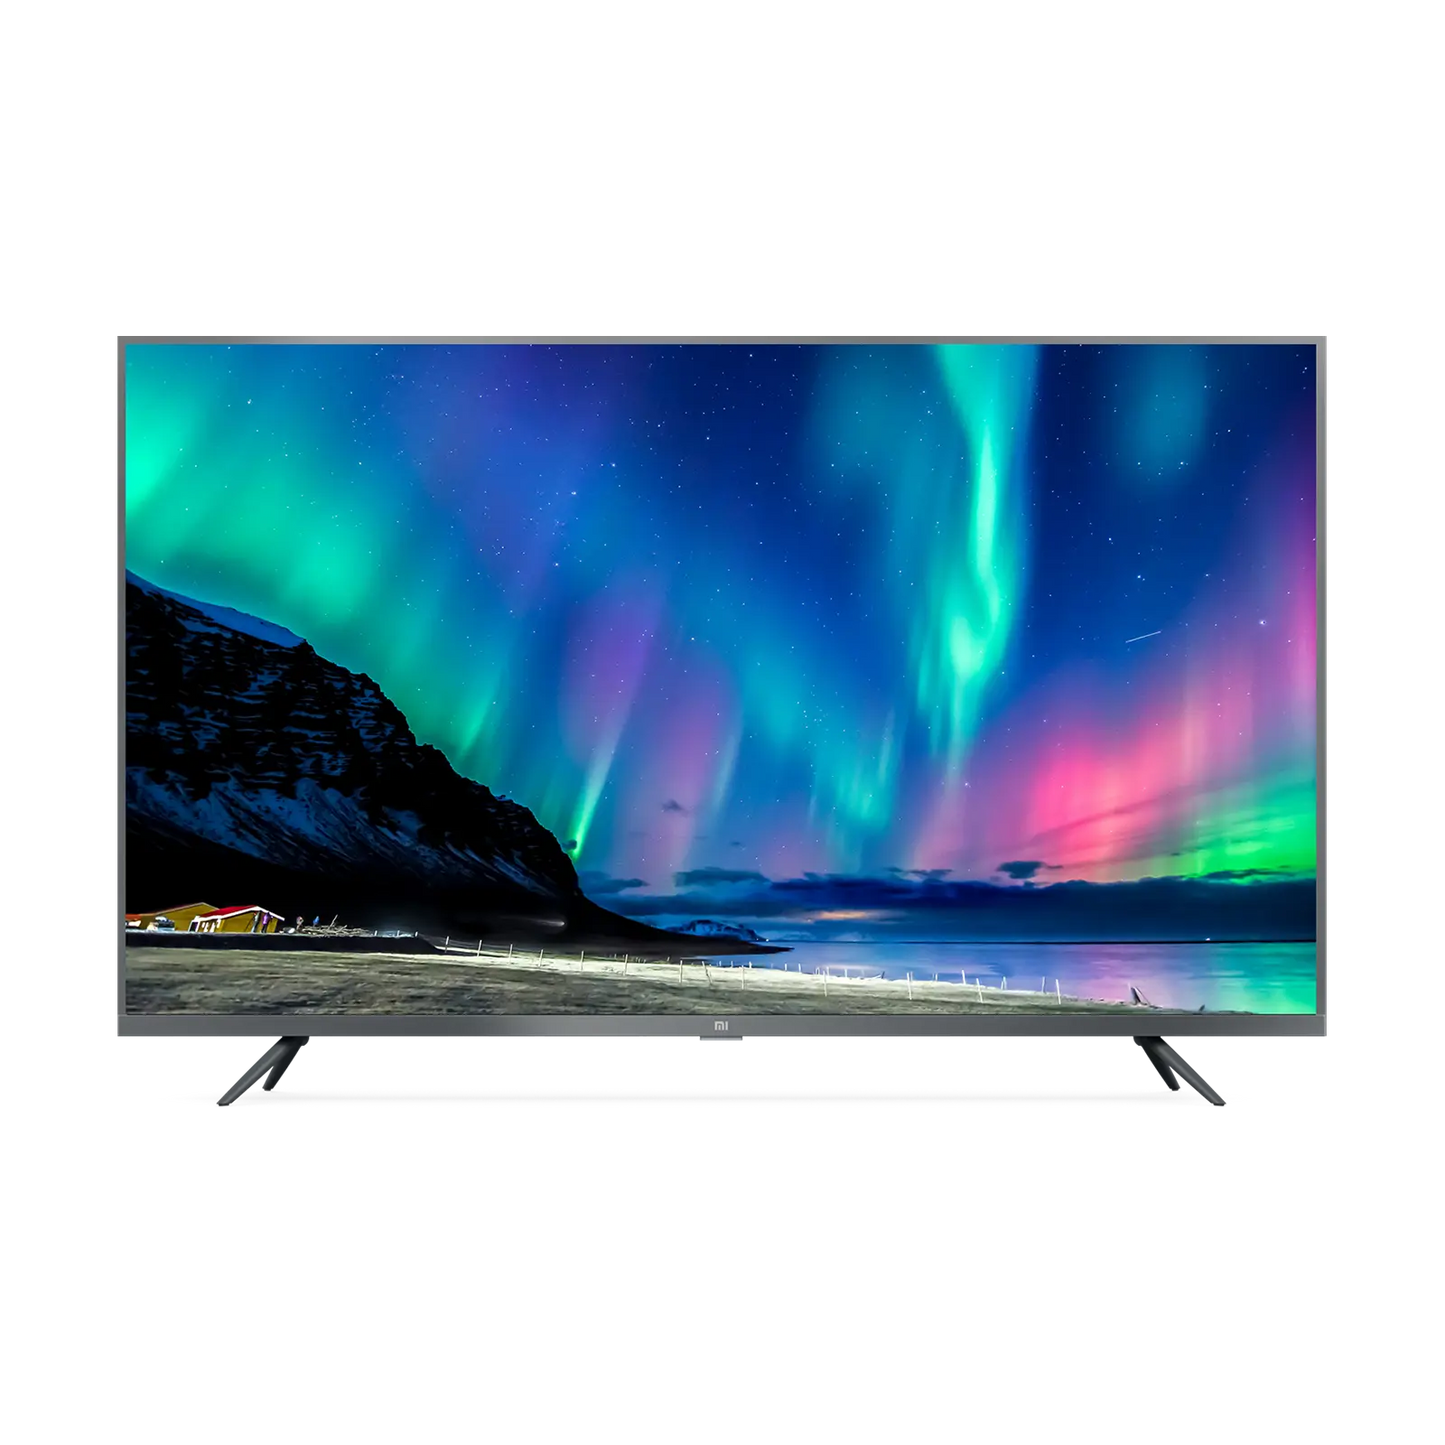 Mi LED TV 4S 43" od Xiaomi w SimplyBuy.pl